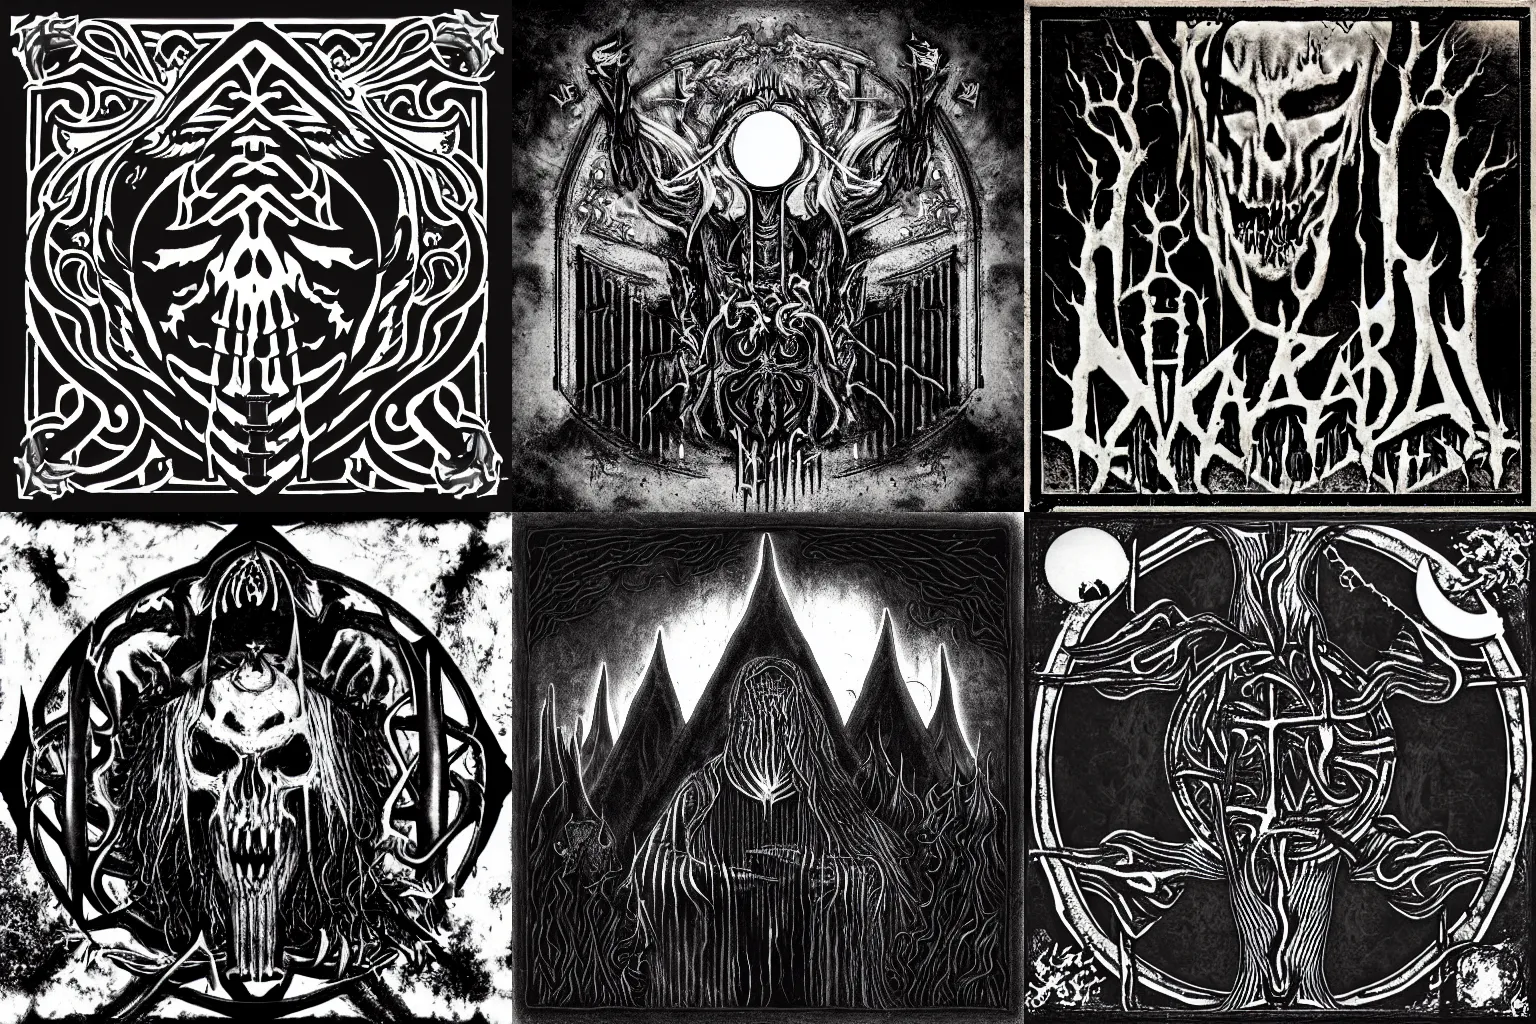 Prompt: black metal album cover